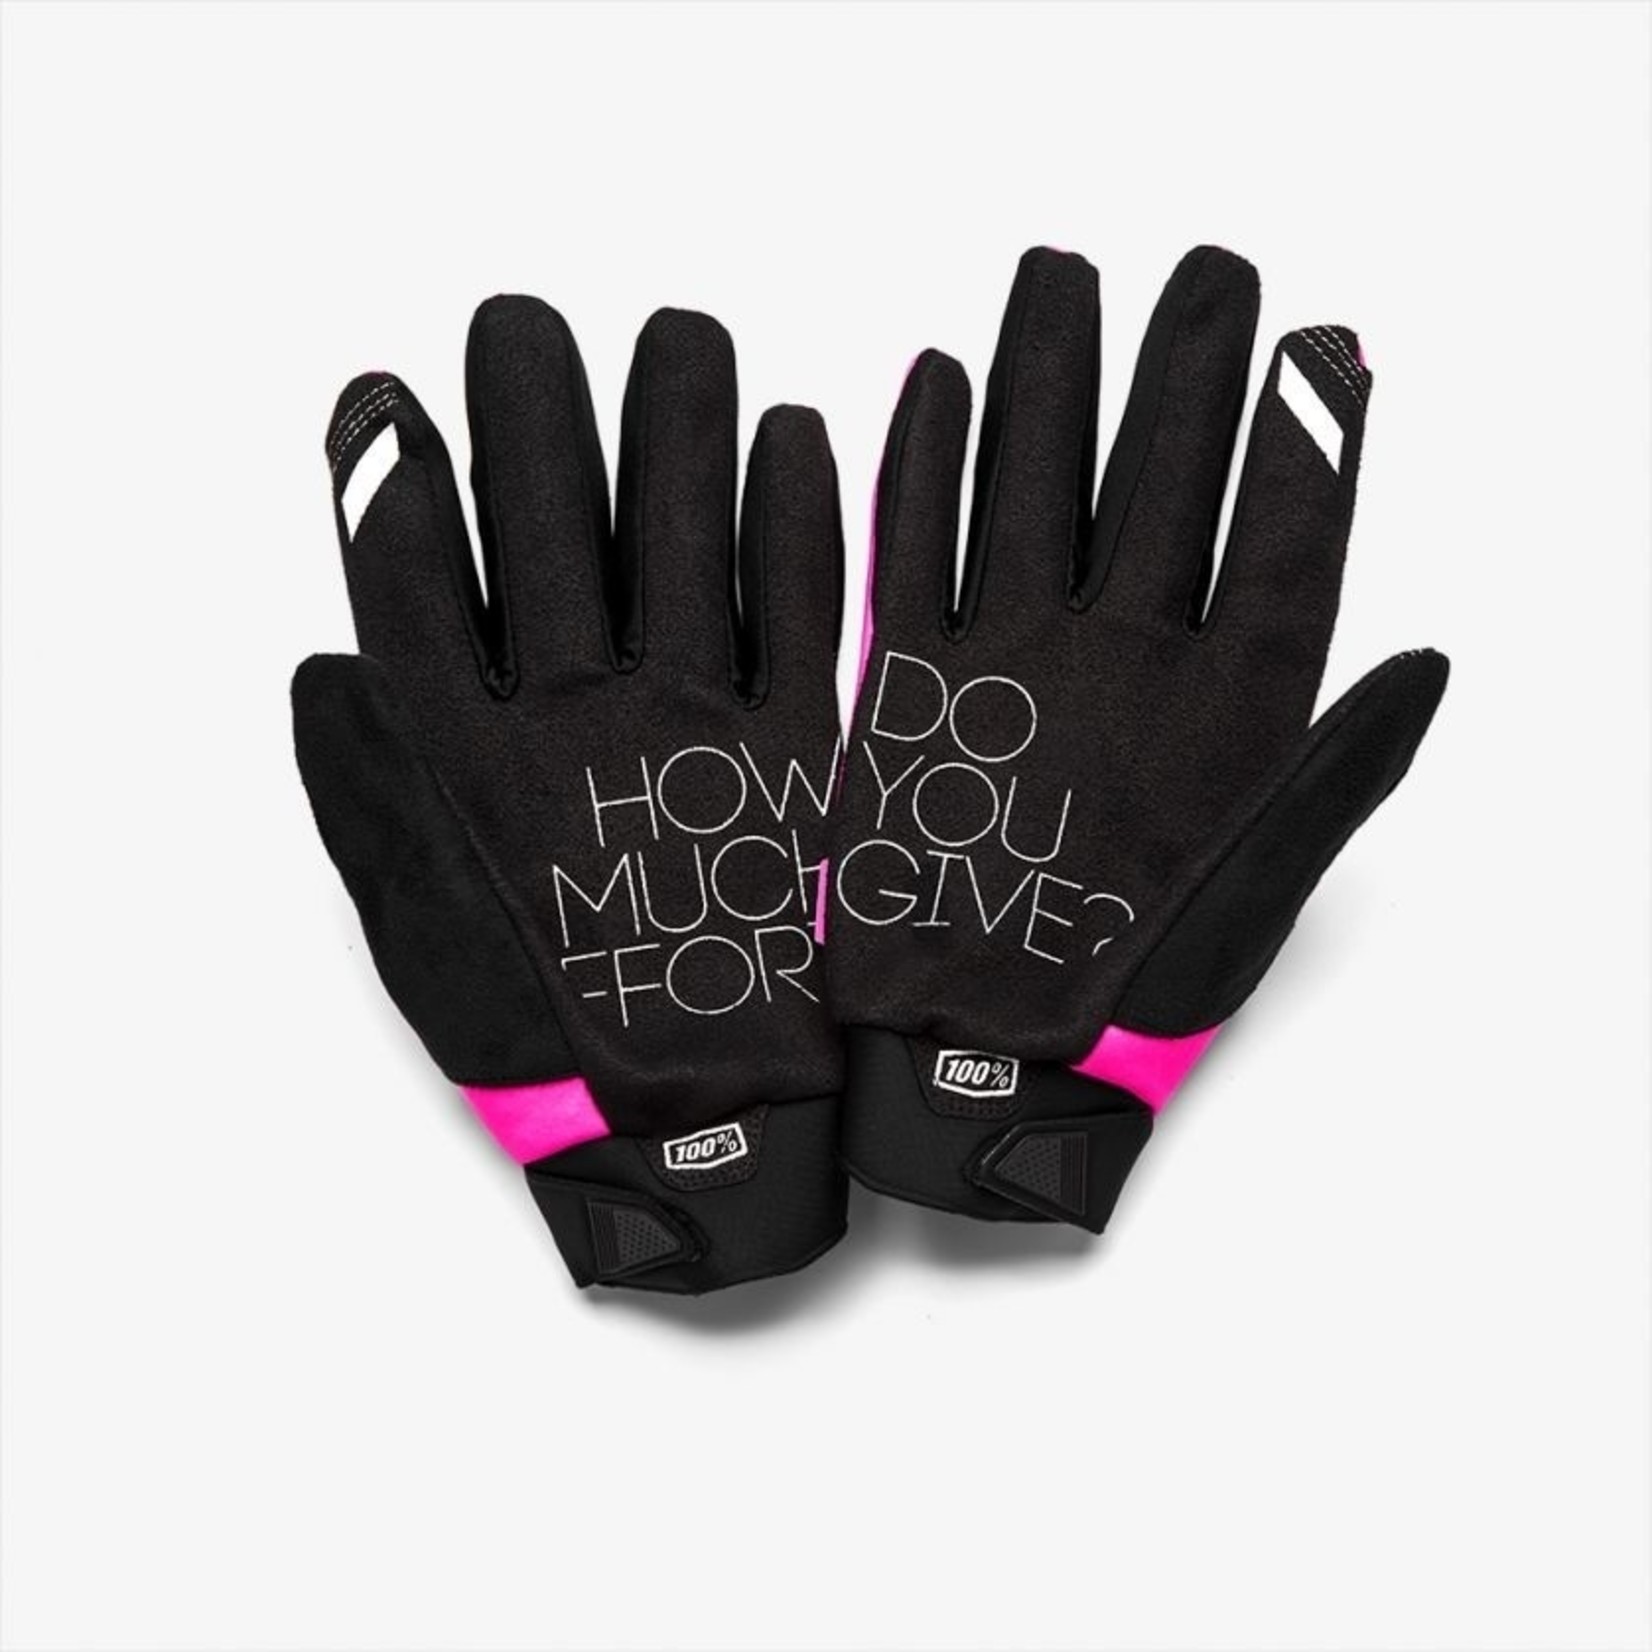 100% BRISKER Women's Glove - Neon Pink/Black